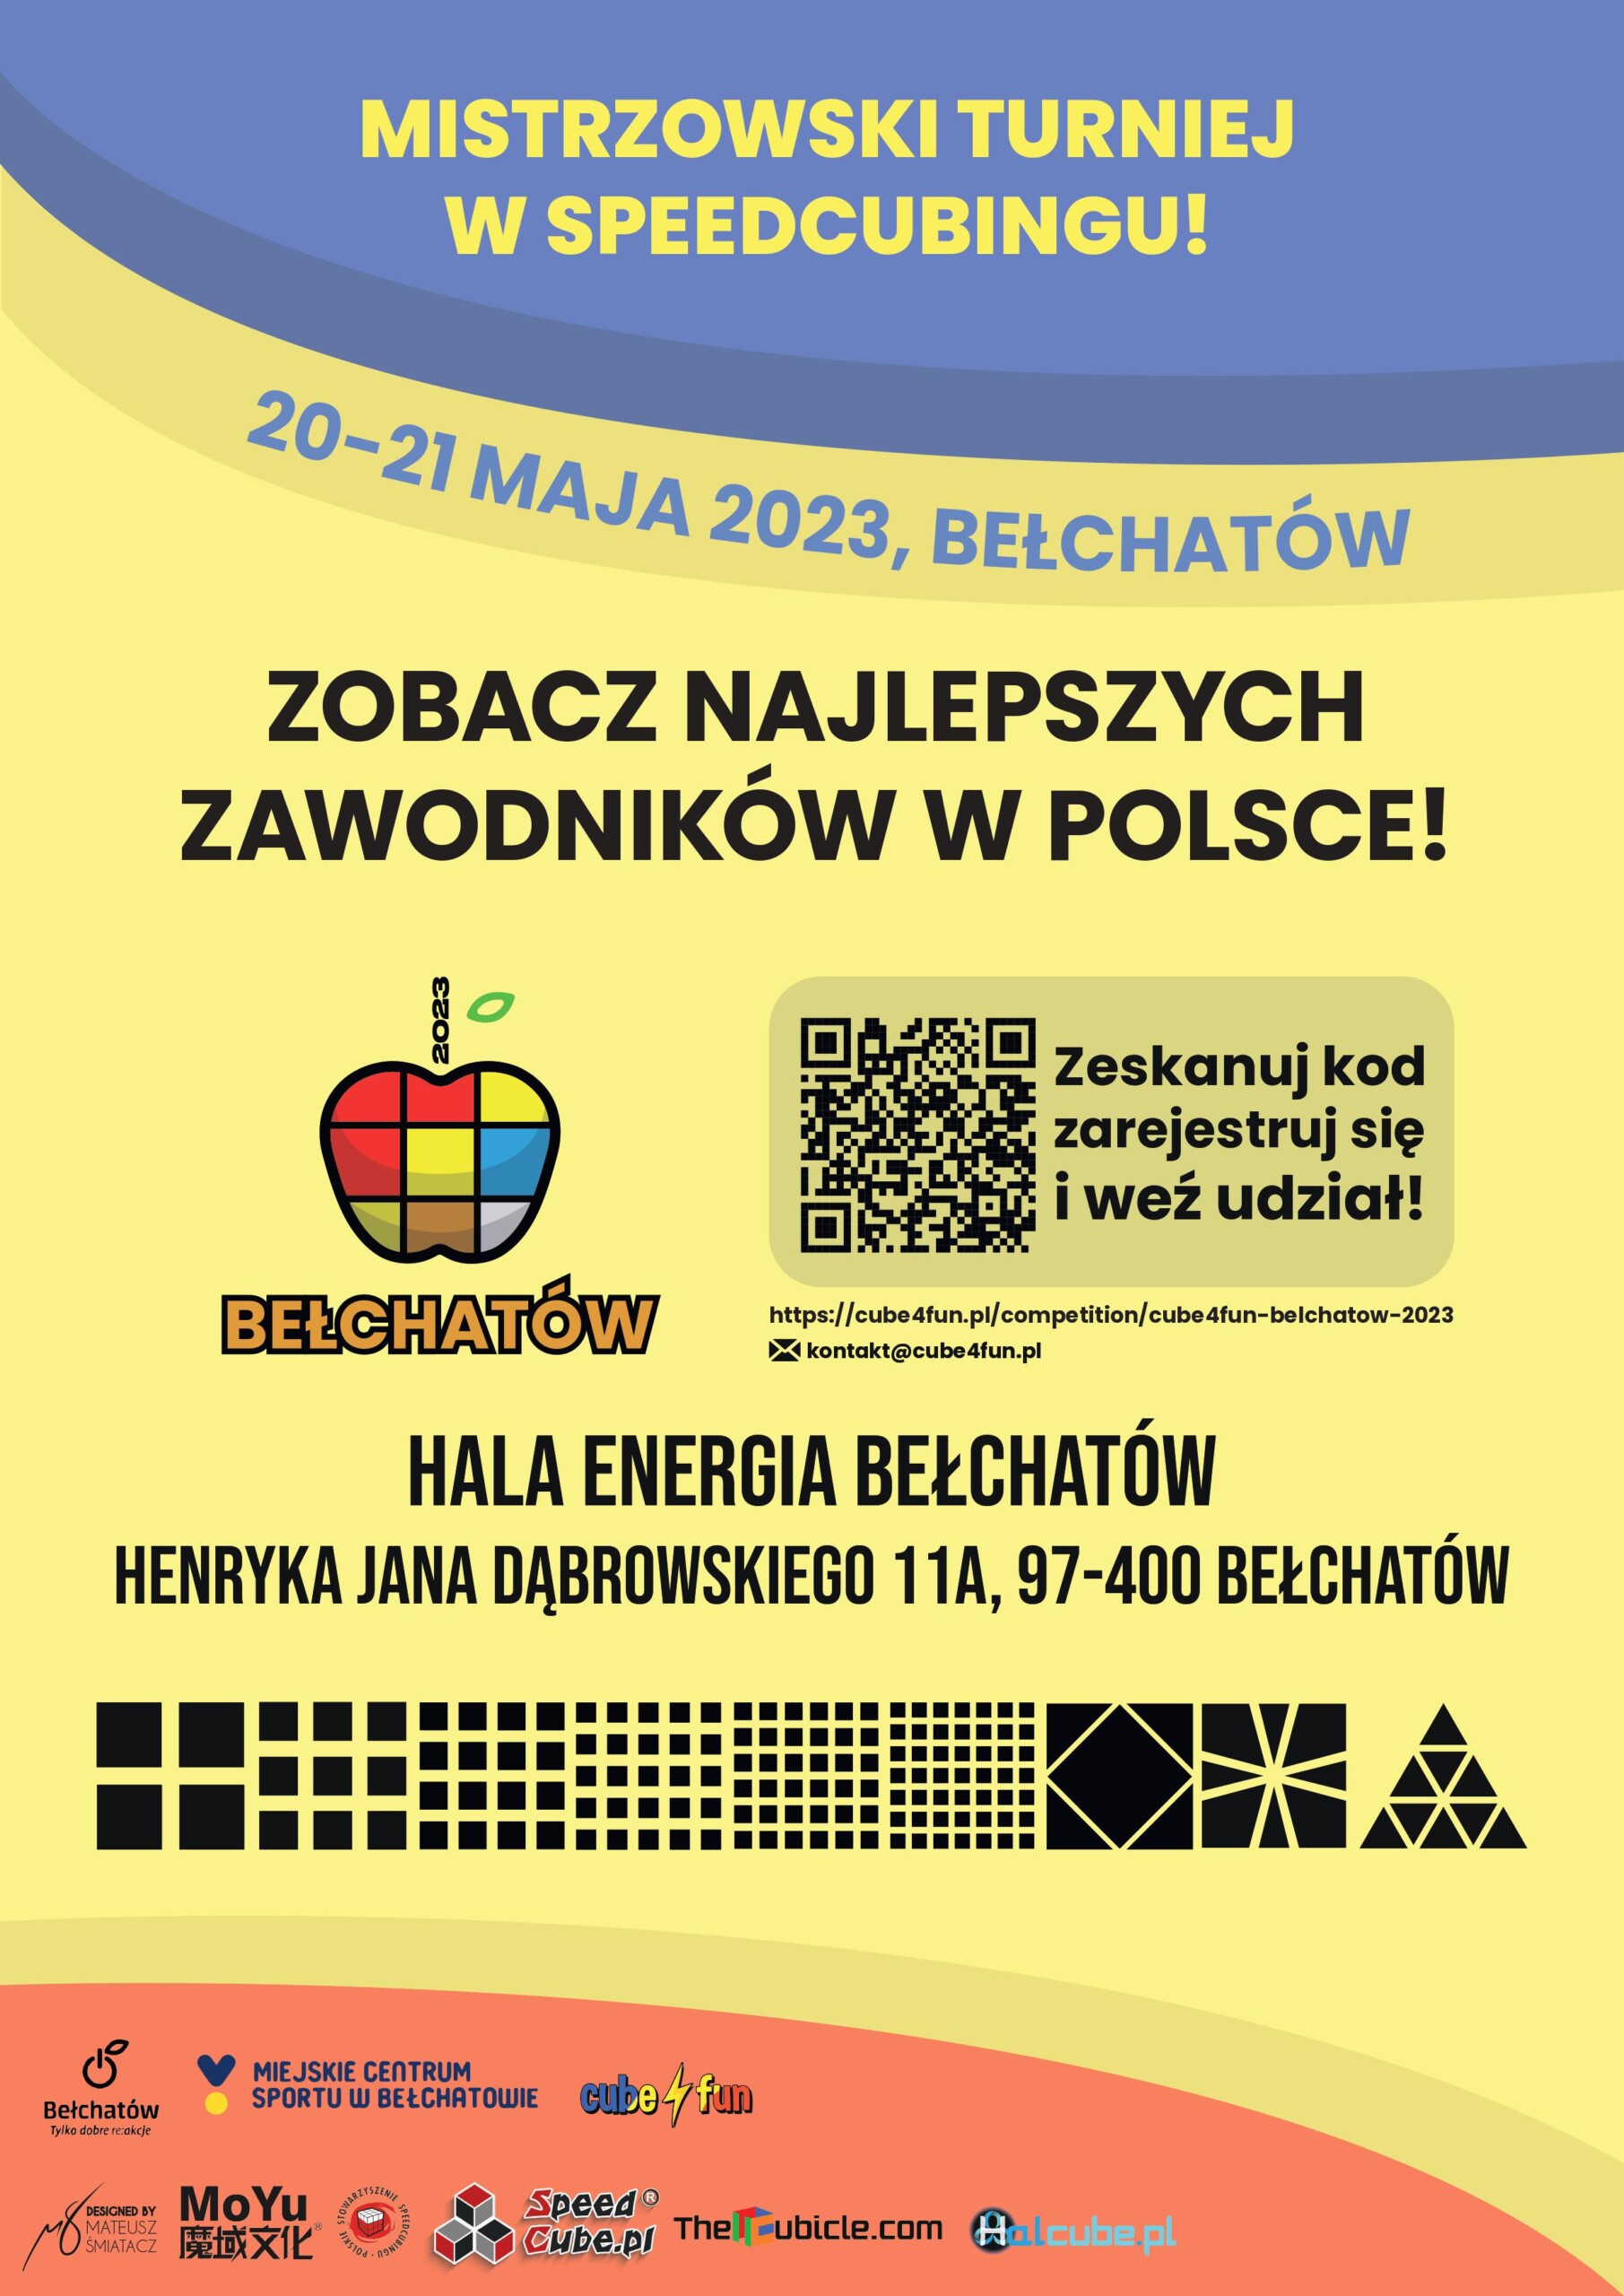 plakat przedstawia szczegóły dotyczące imprezy sportowej pn. "CUBE4FUN IN BEŁCHATÓW 2023"